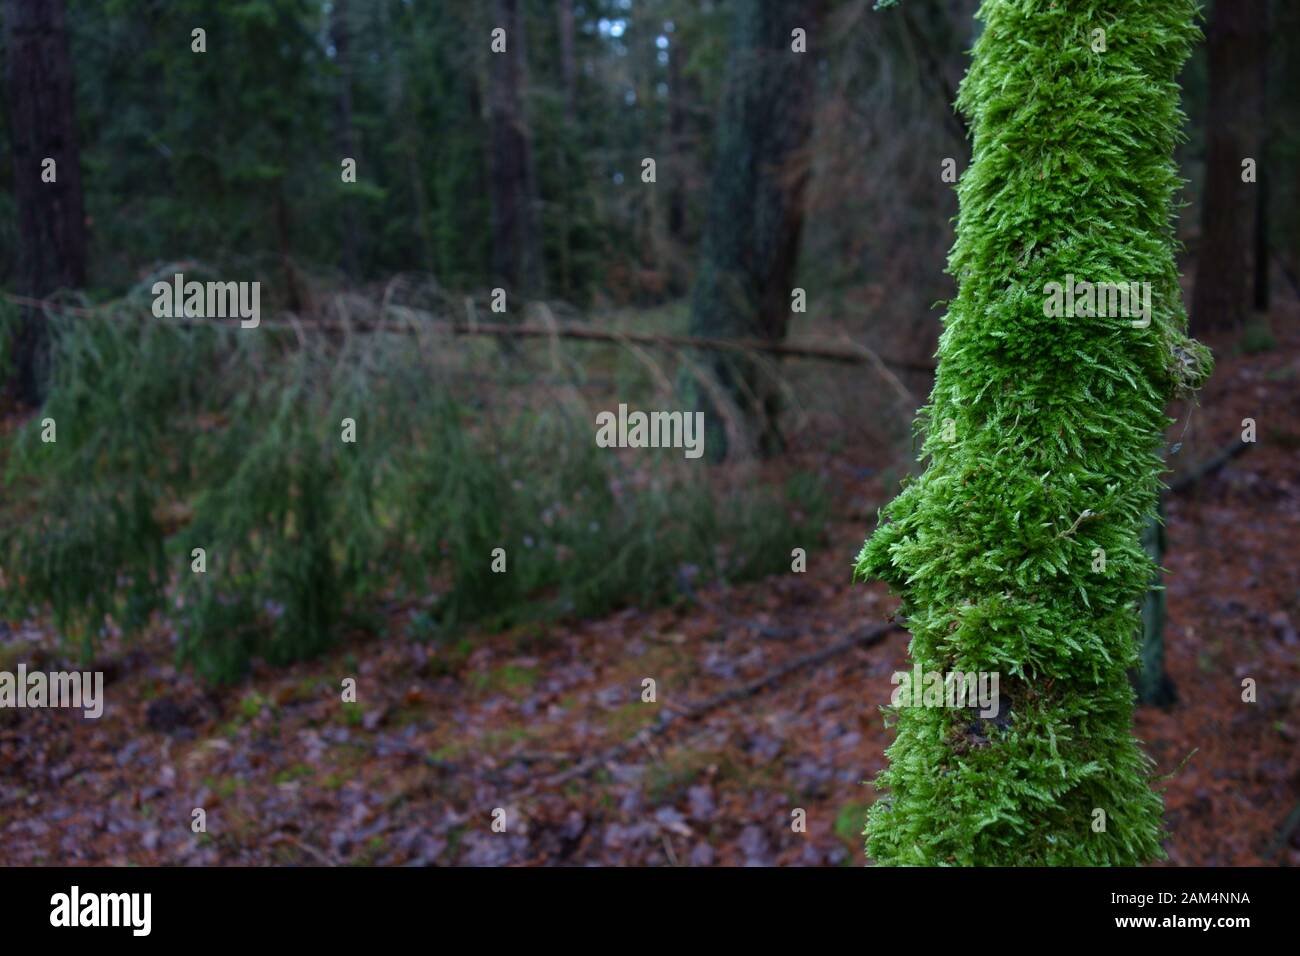 Dünner Zweig mit Moos bedeckt in einer dunklen Winterwaldkulisse Stockfoto